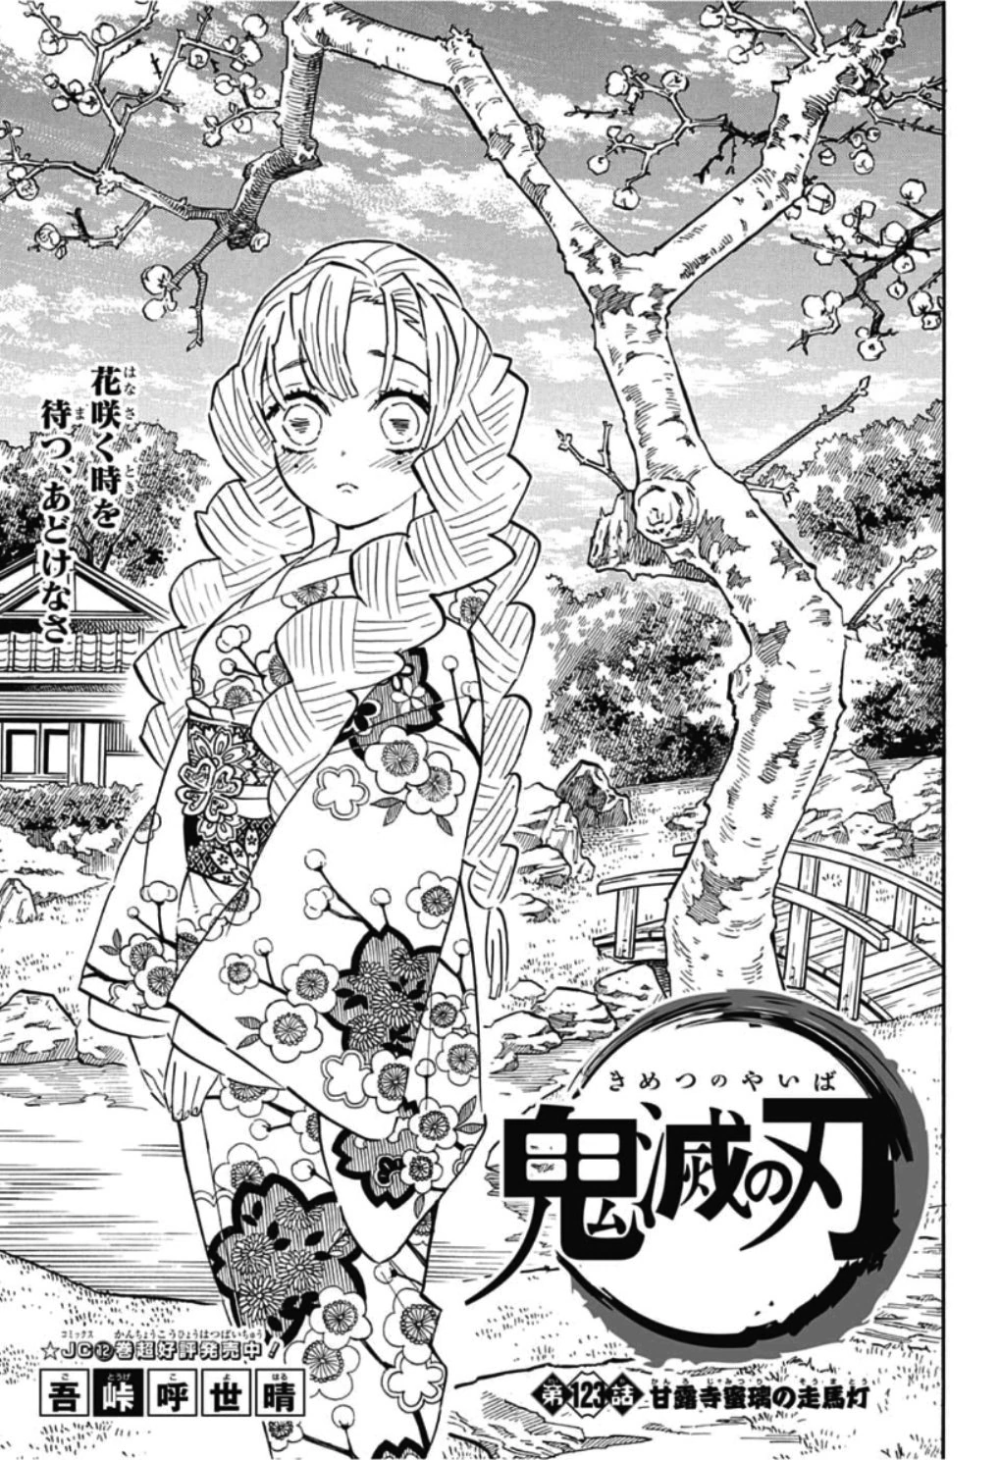 nezuko and mitsuri manga panels Search. Anime wallpaper, Anime, Manga